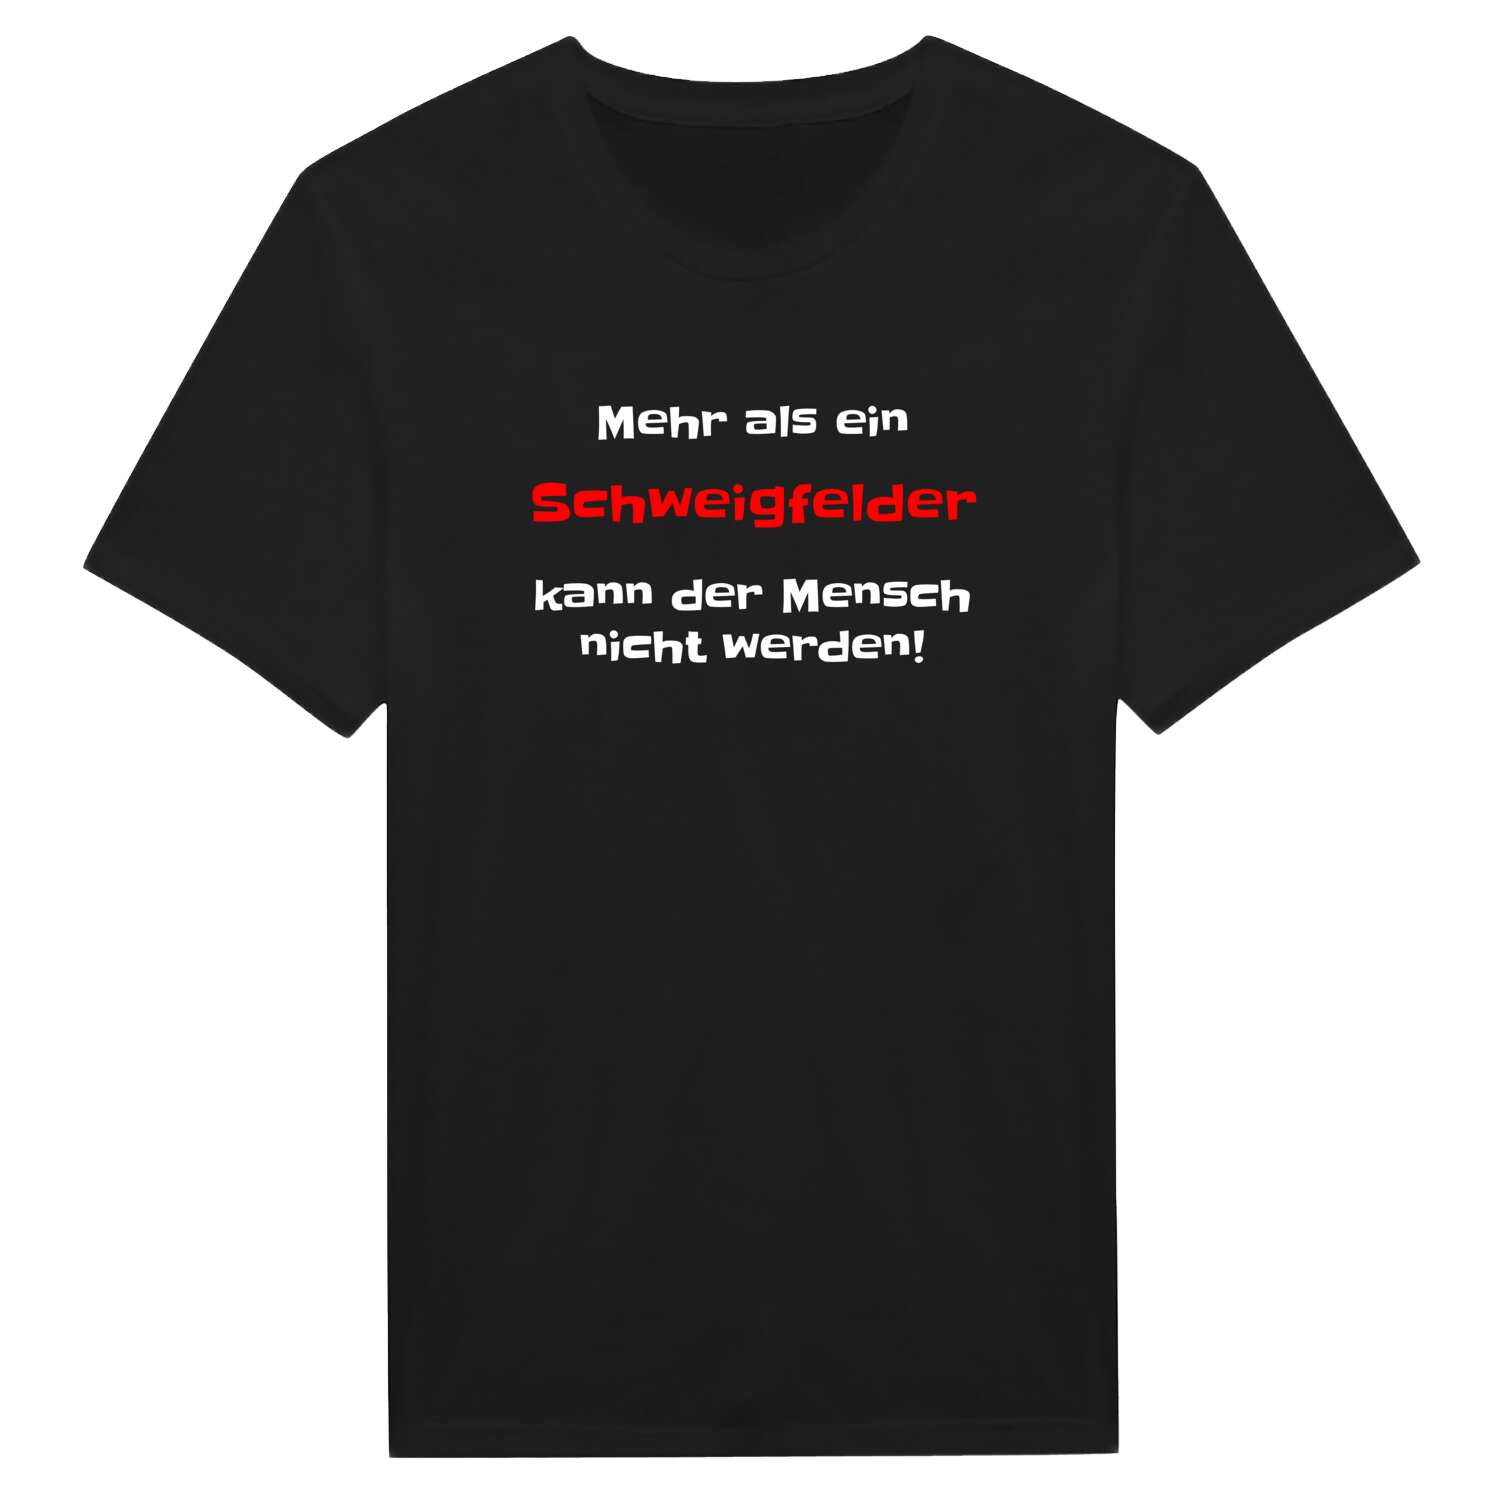 Schweigfeld T-Shirt »Mehr als ein«